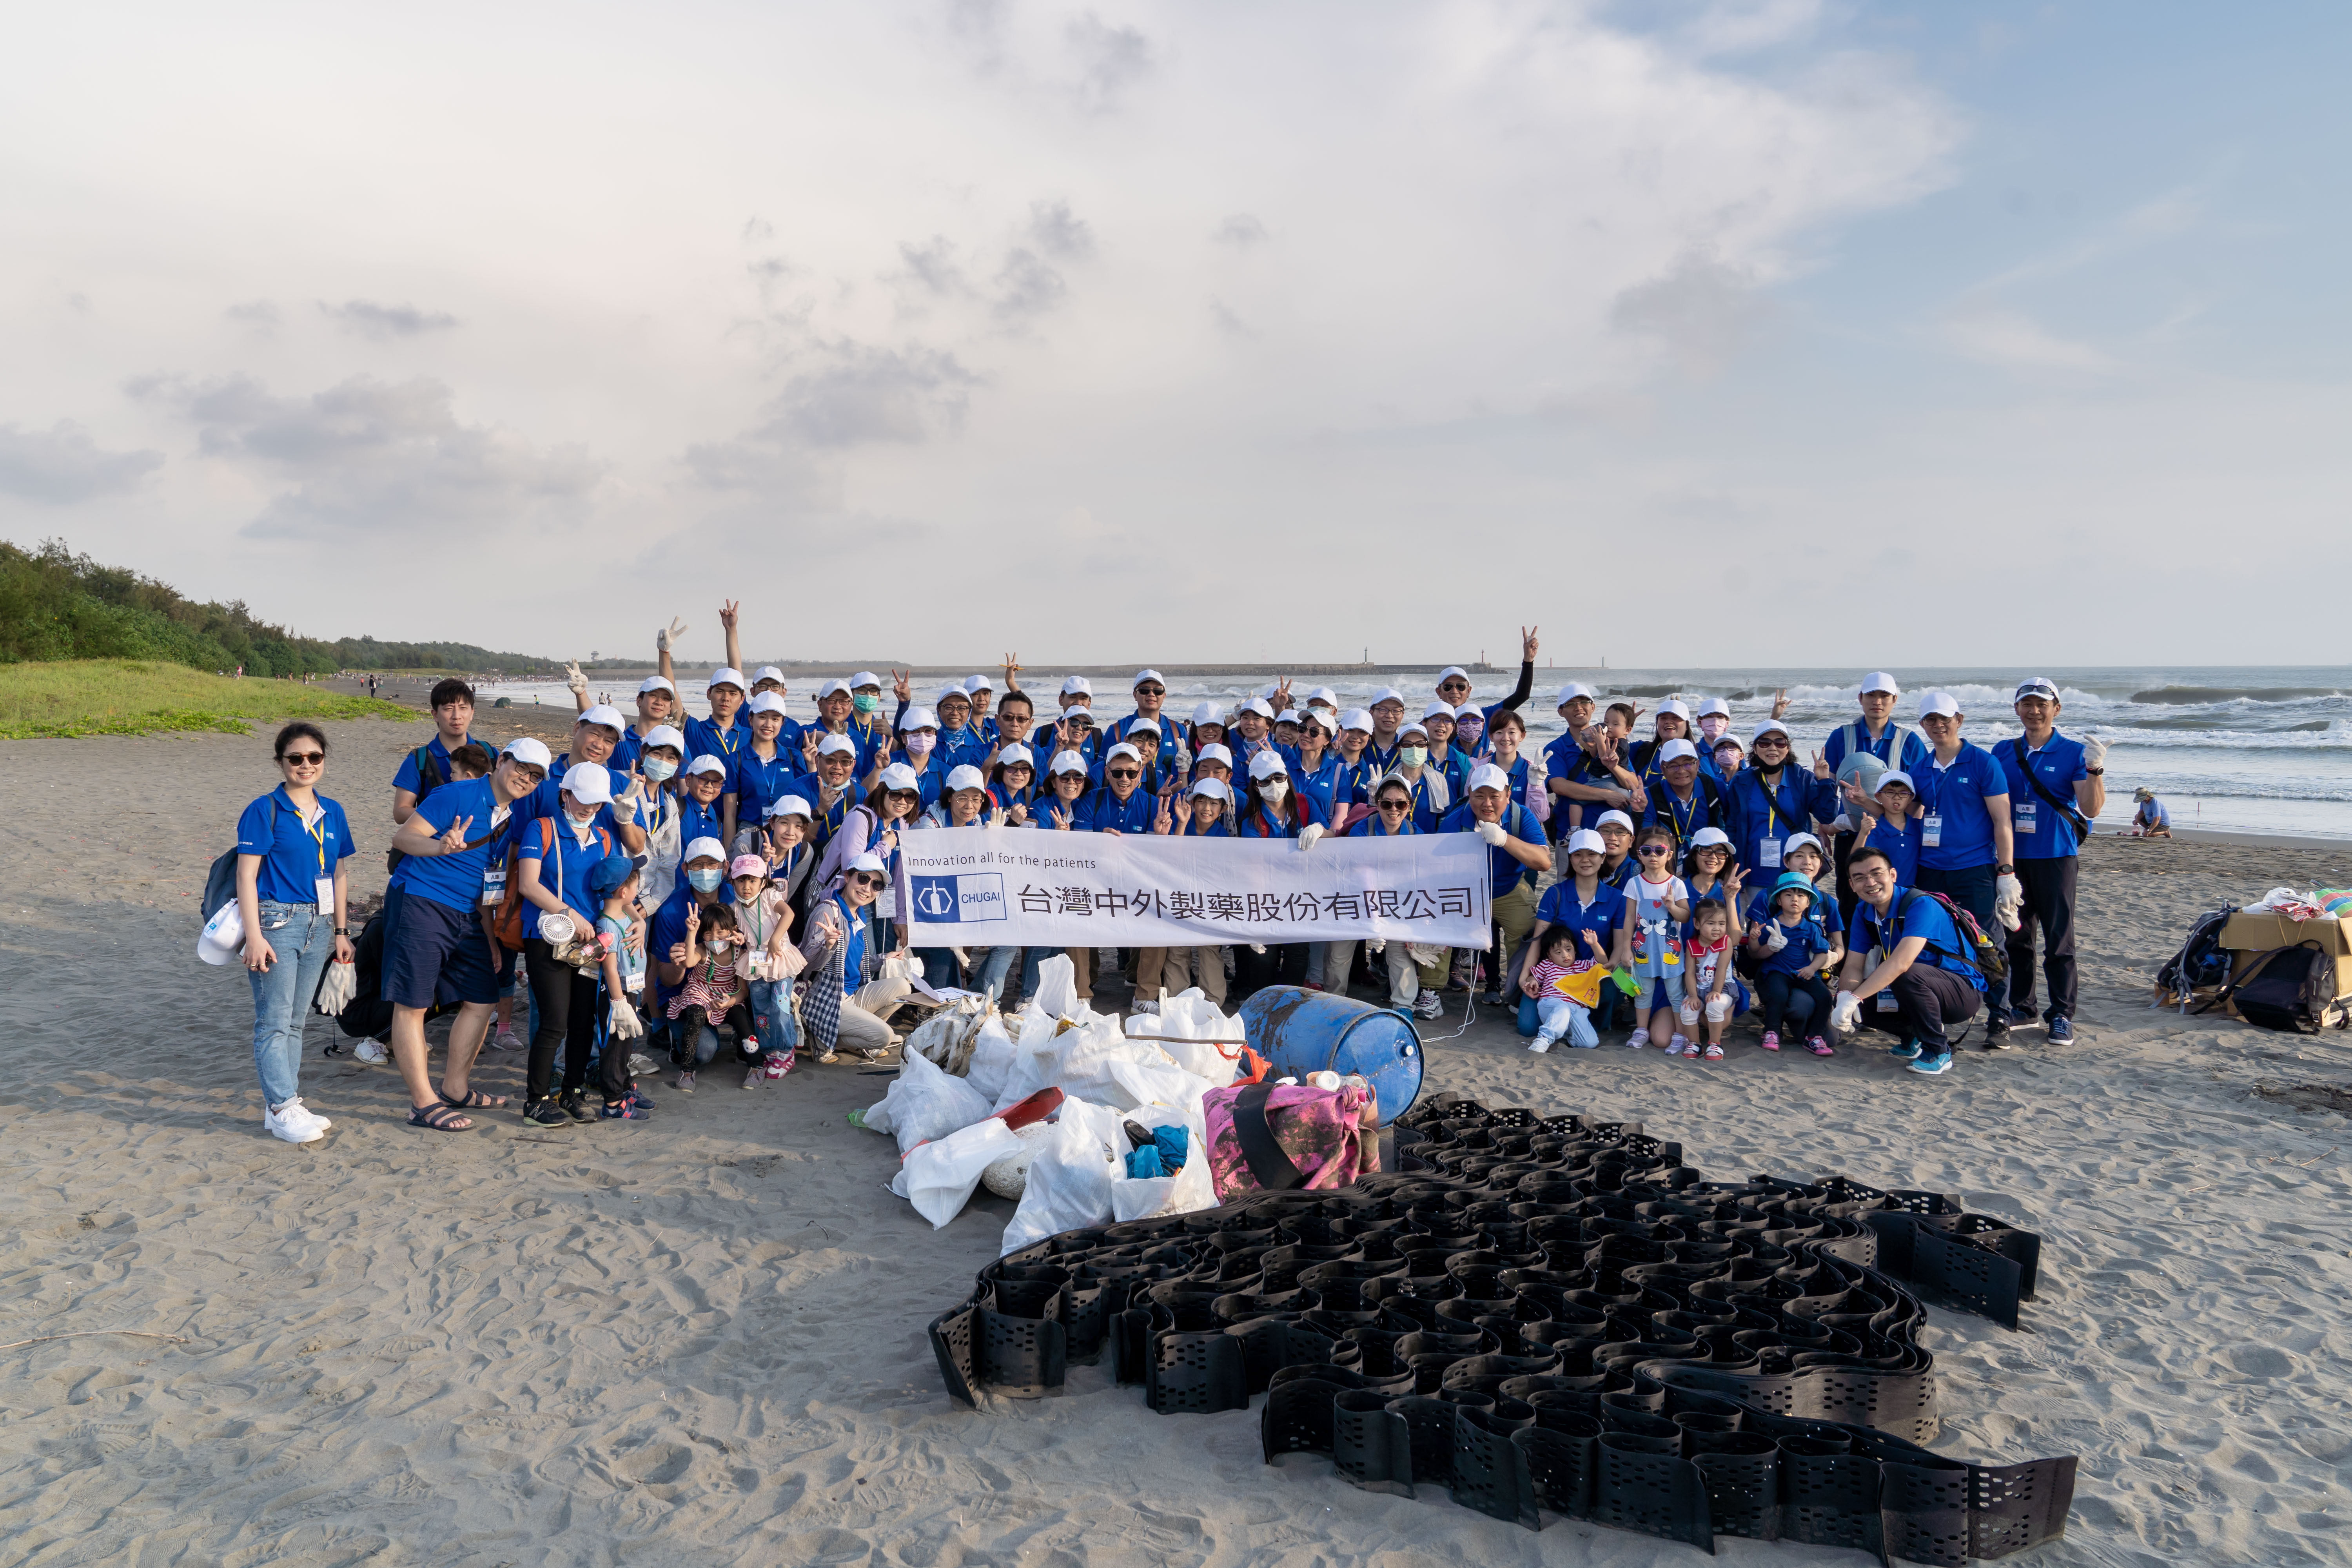 Chugai Pharma Taiwan puts high emphasis on ecological marine environment by beach cleanup